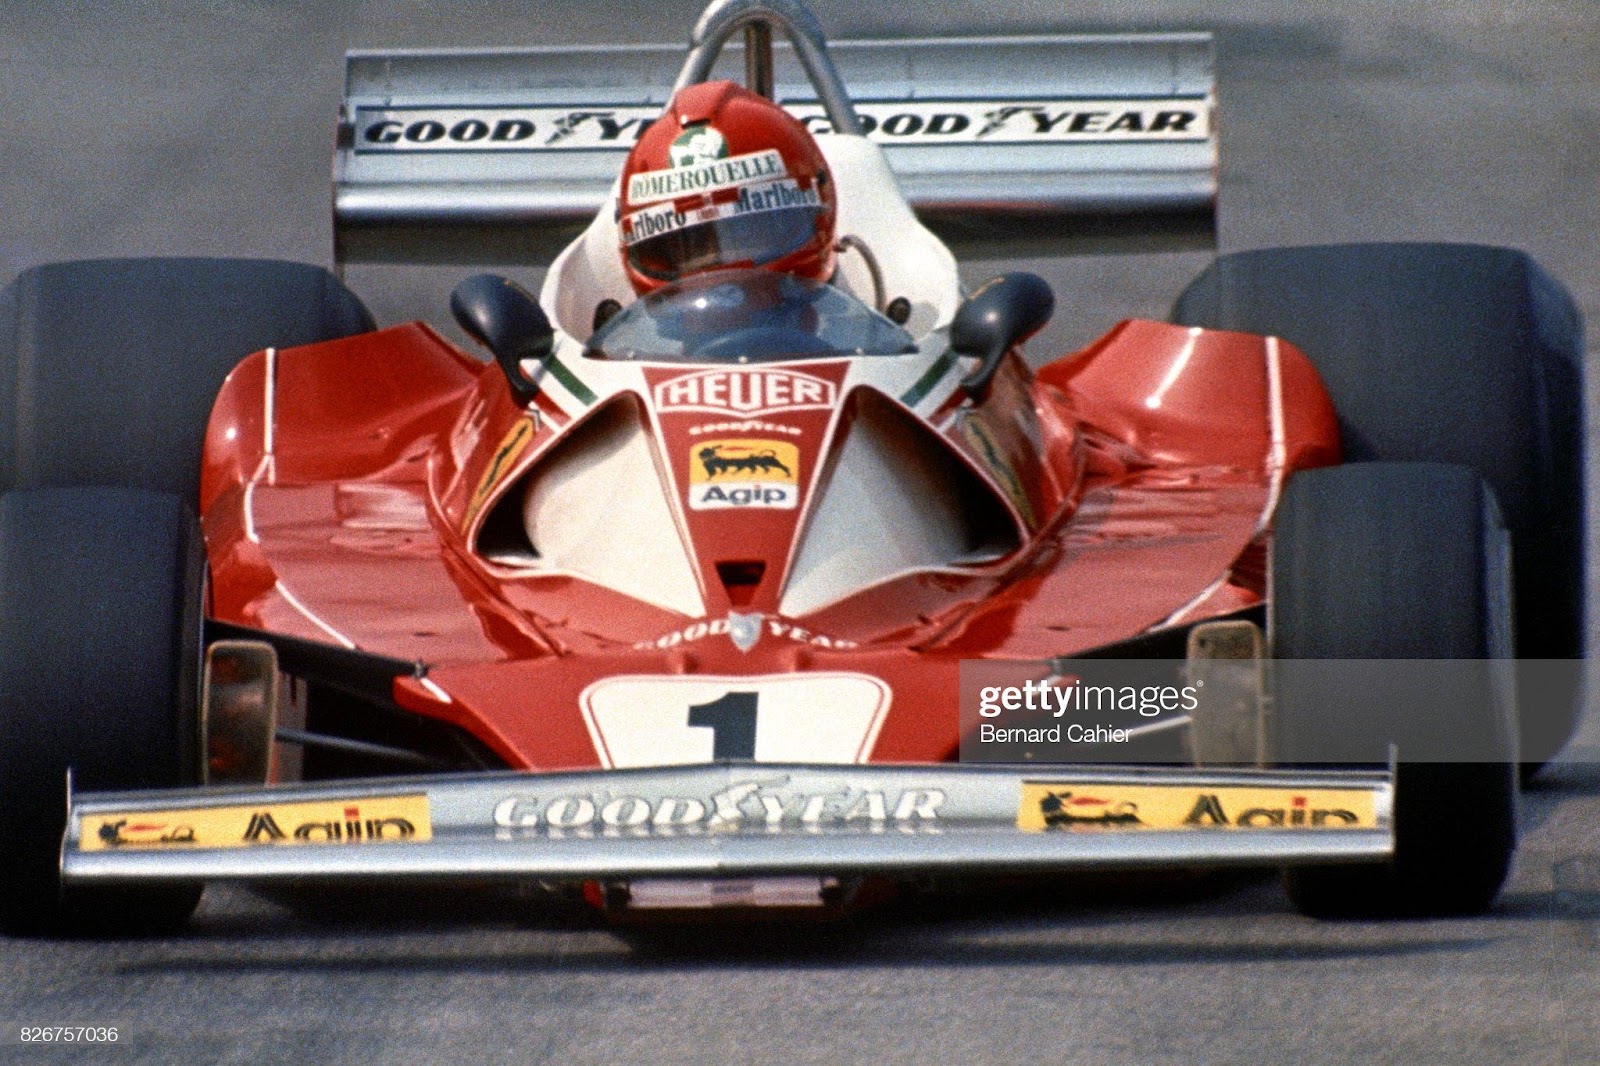 Niki Lauda in a Ferrari